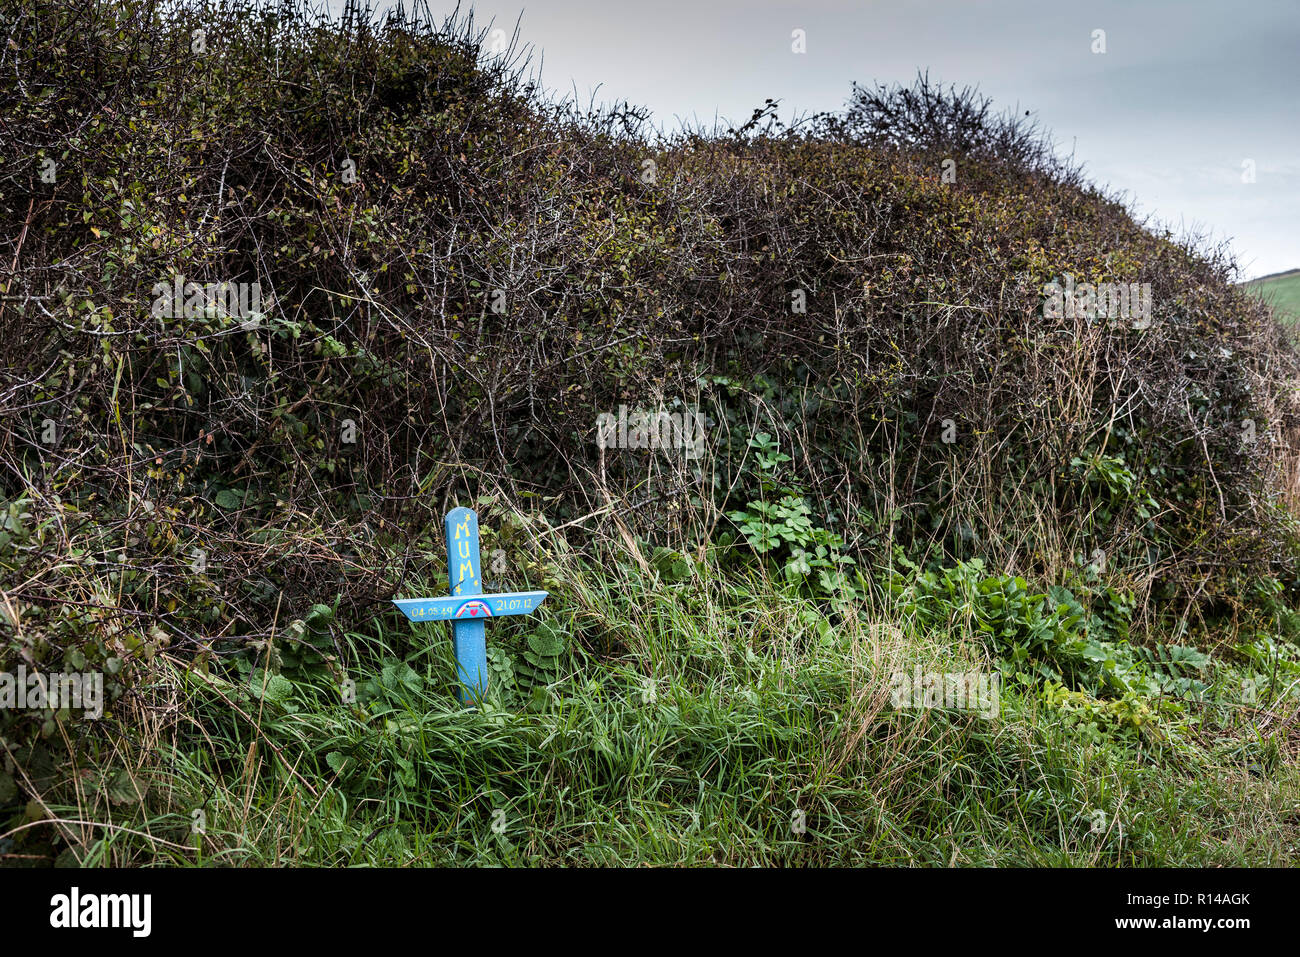 Une croix en bois peint à la main placée parmi la végétation de l'estuaire Gannel à Newquay Cornwall. Banque D'Images